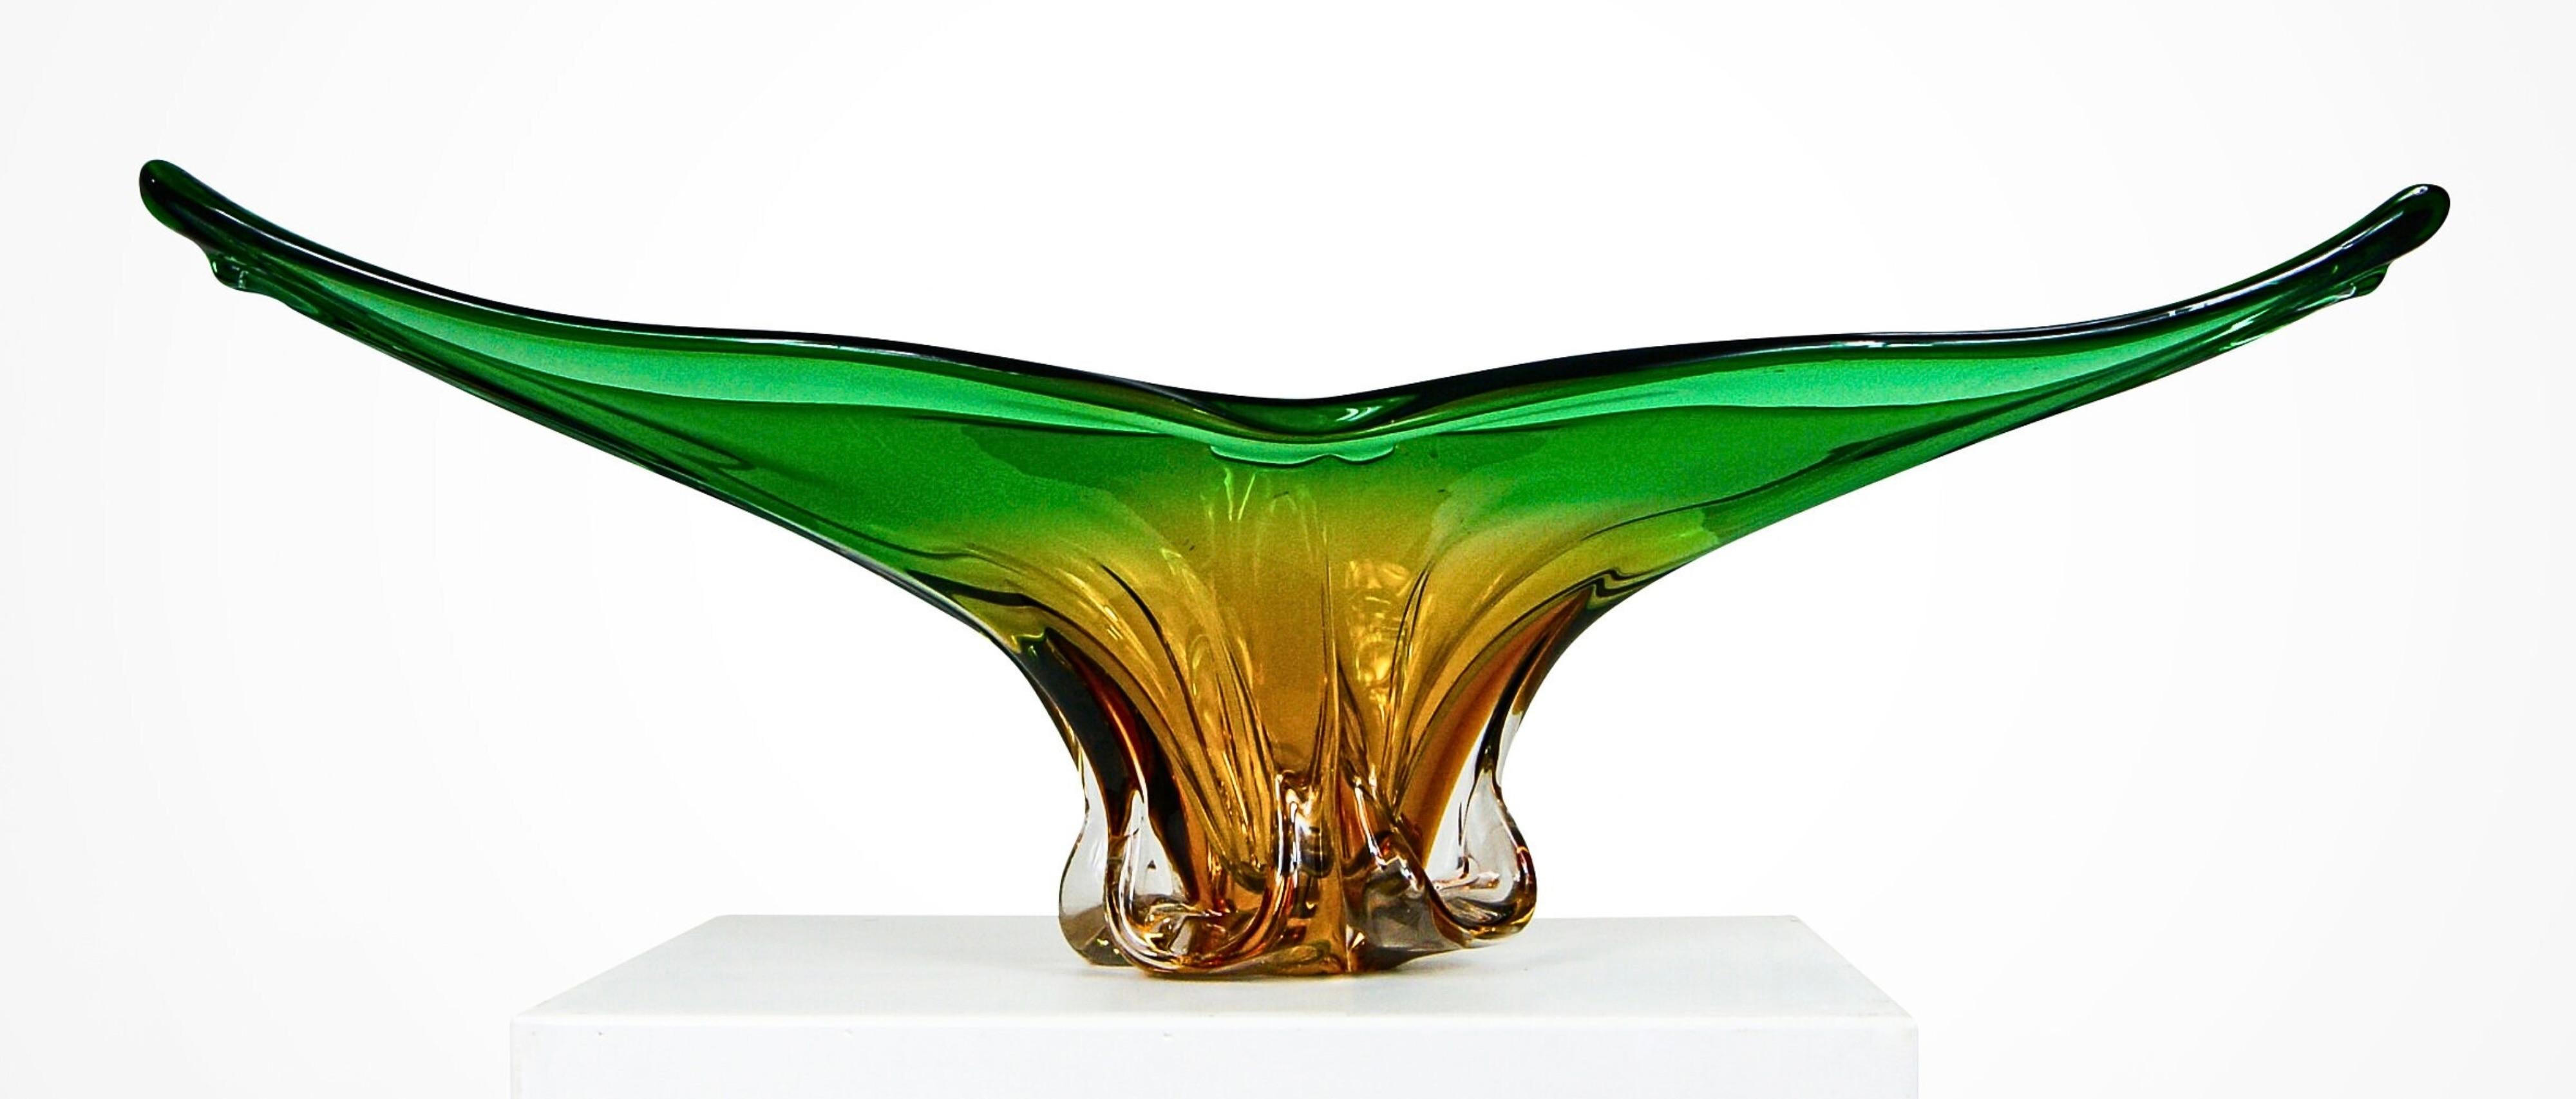 Monumentale Schale aus bernsteinfarbenem und grünem Murano-Sommerso-Glas und passende Vase.
Cristallo Venezia zugeschrieben, ca. 1960er Jahre.
Exquisite Skulpturen in organischen Formen mit einem Gesamtgewicht von fast 8 kg in der Verpackung.
Die